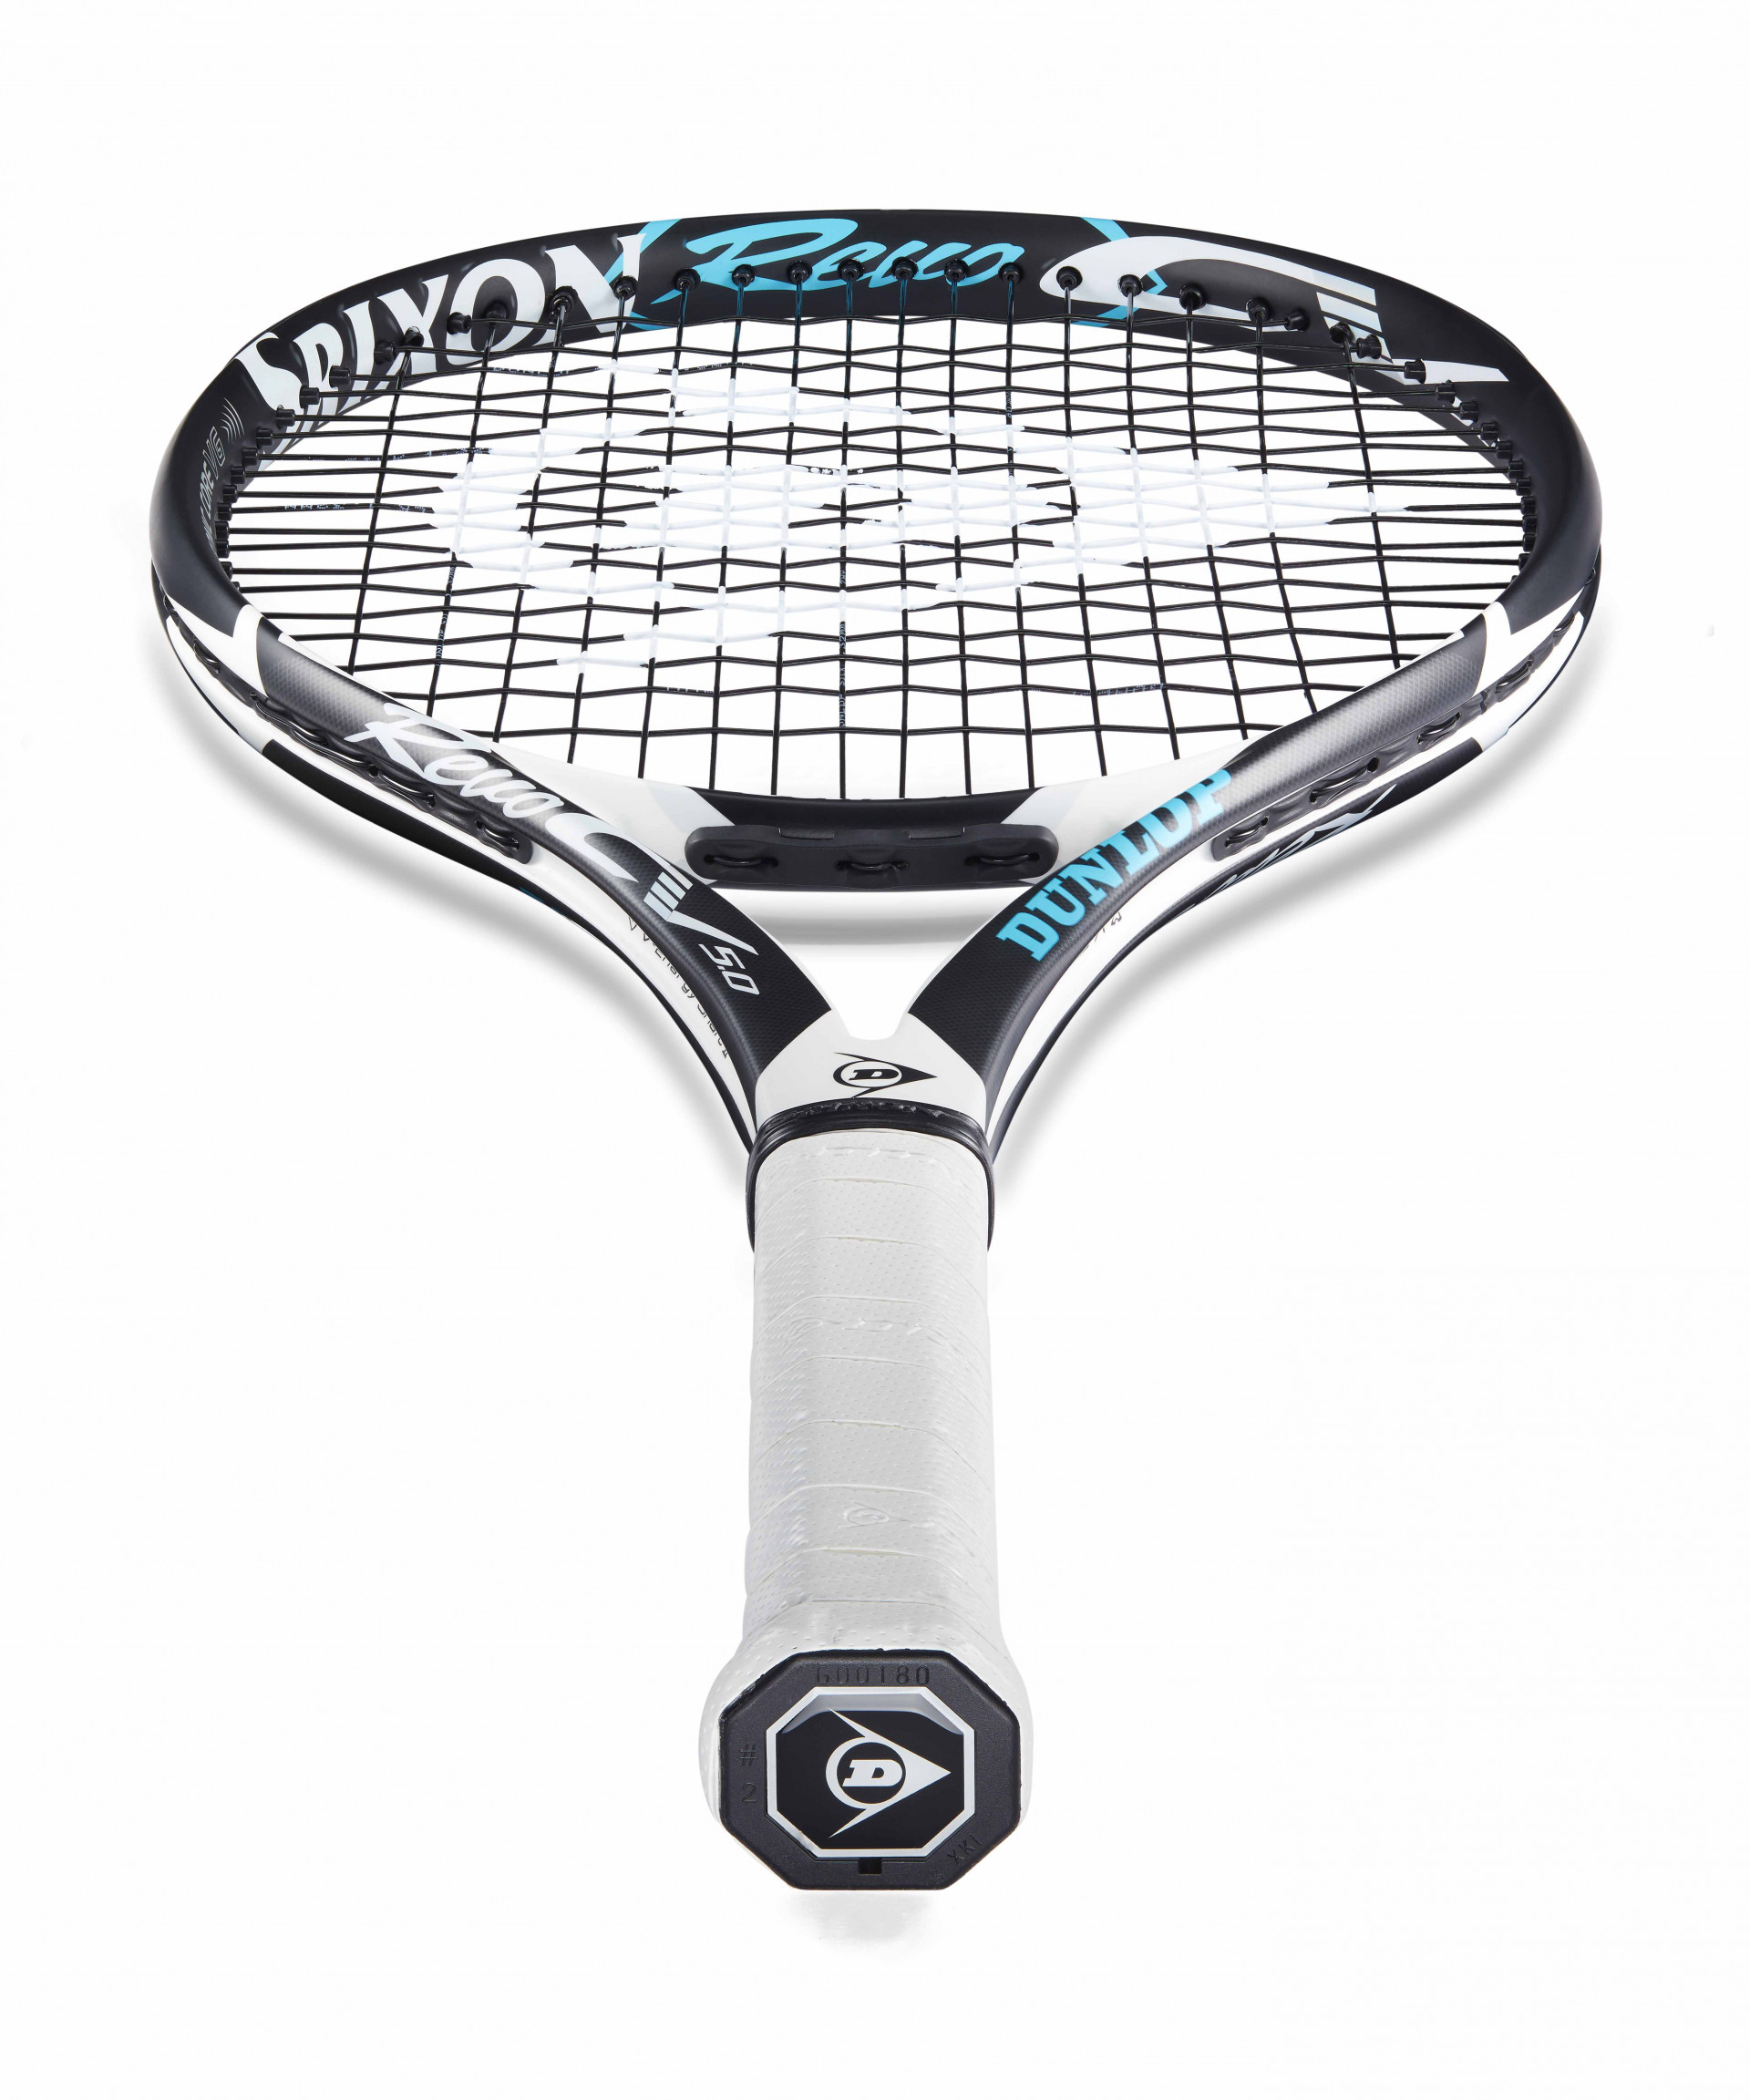 Raquette de Tennis Dunlop srx CV 5.0